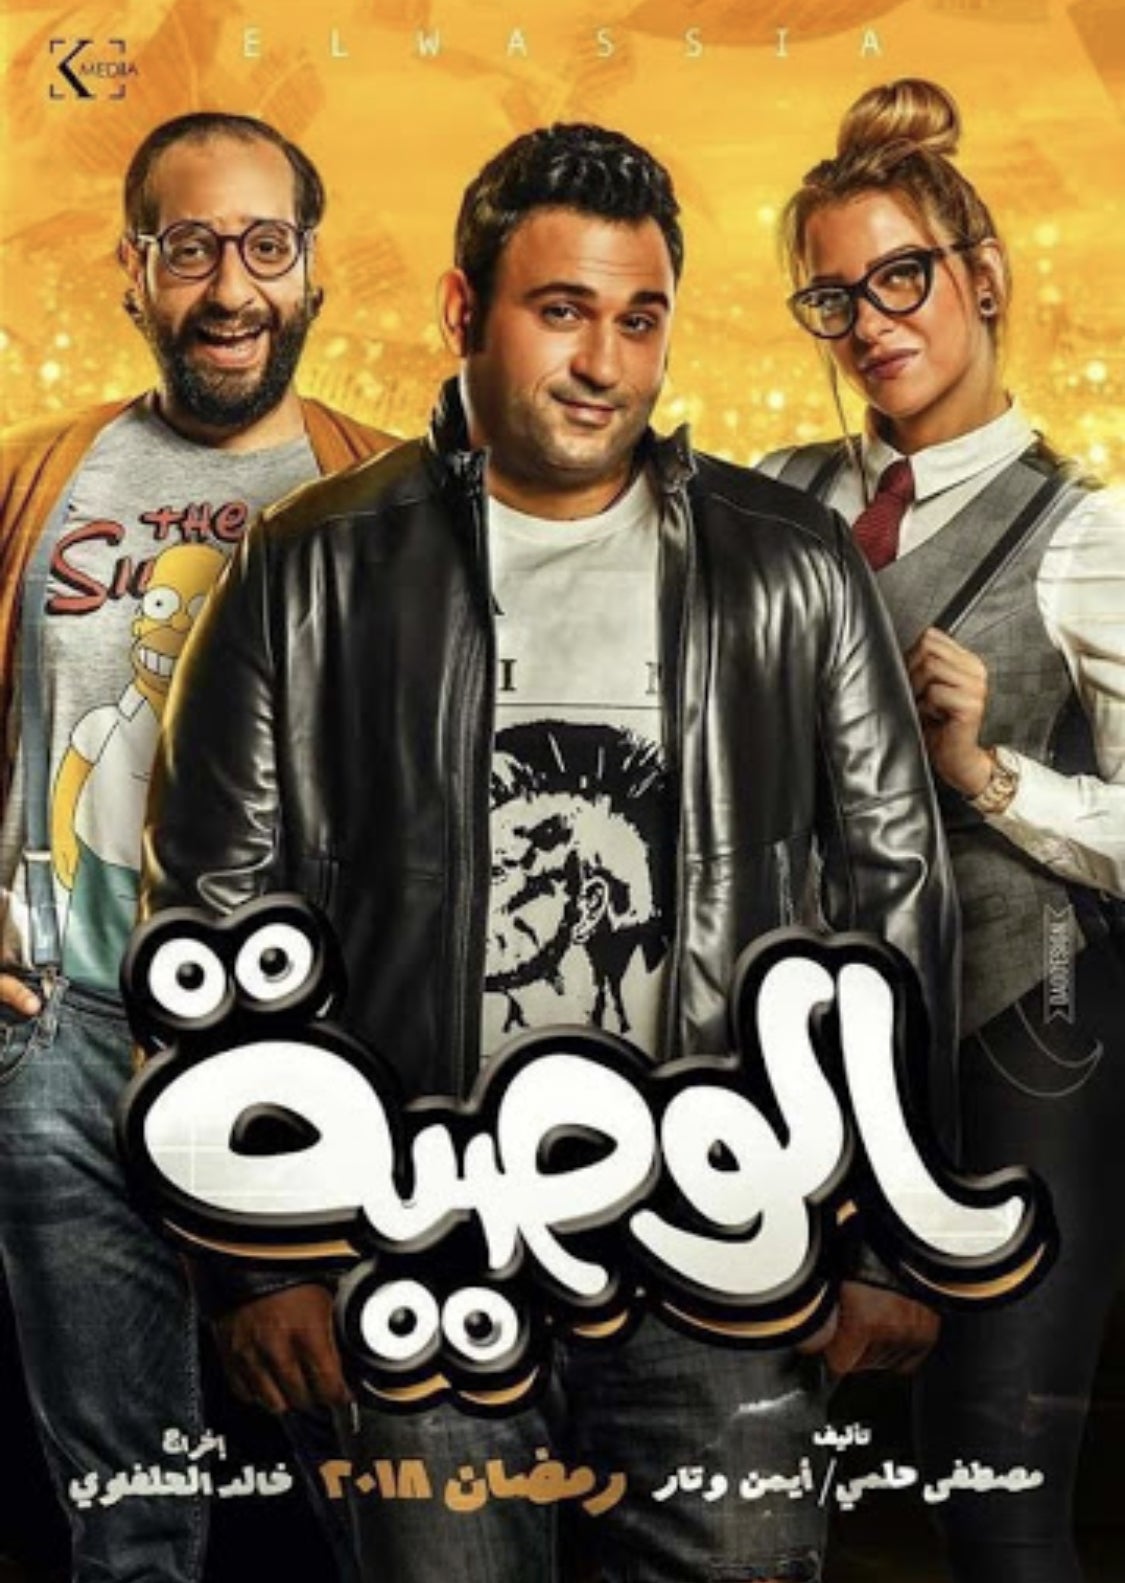 TV ratings for Al-waseya in Turkey. N/A TV series